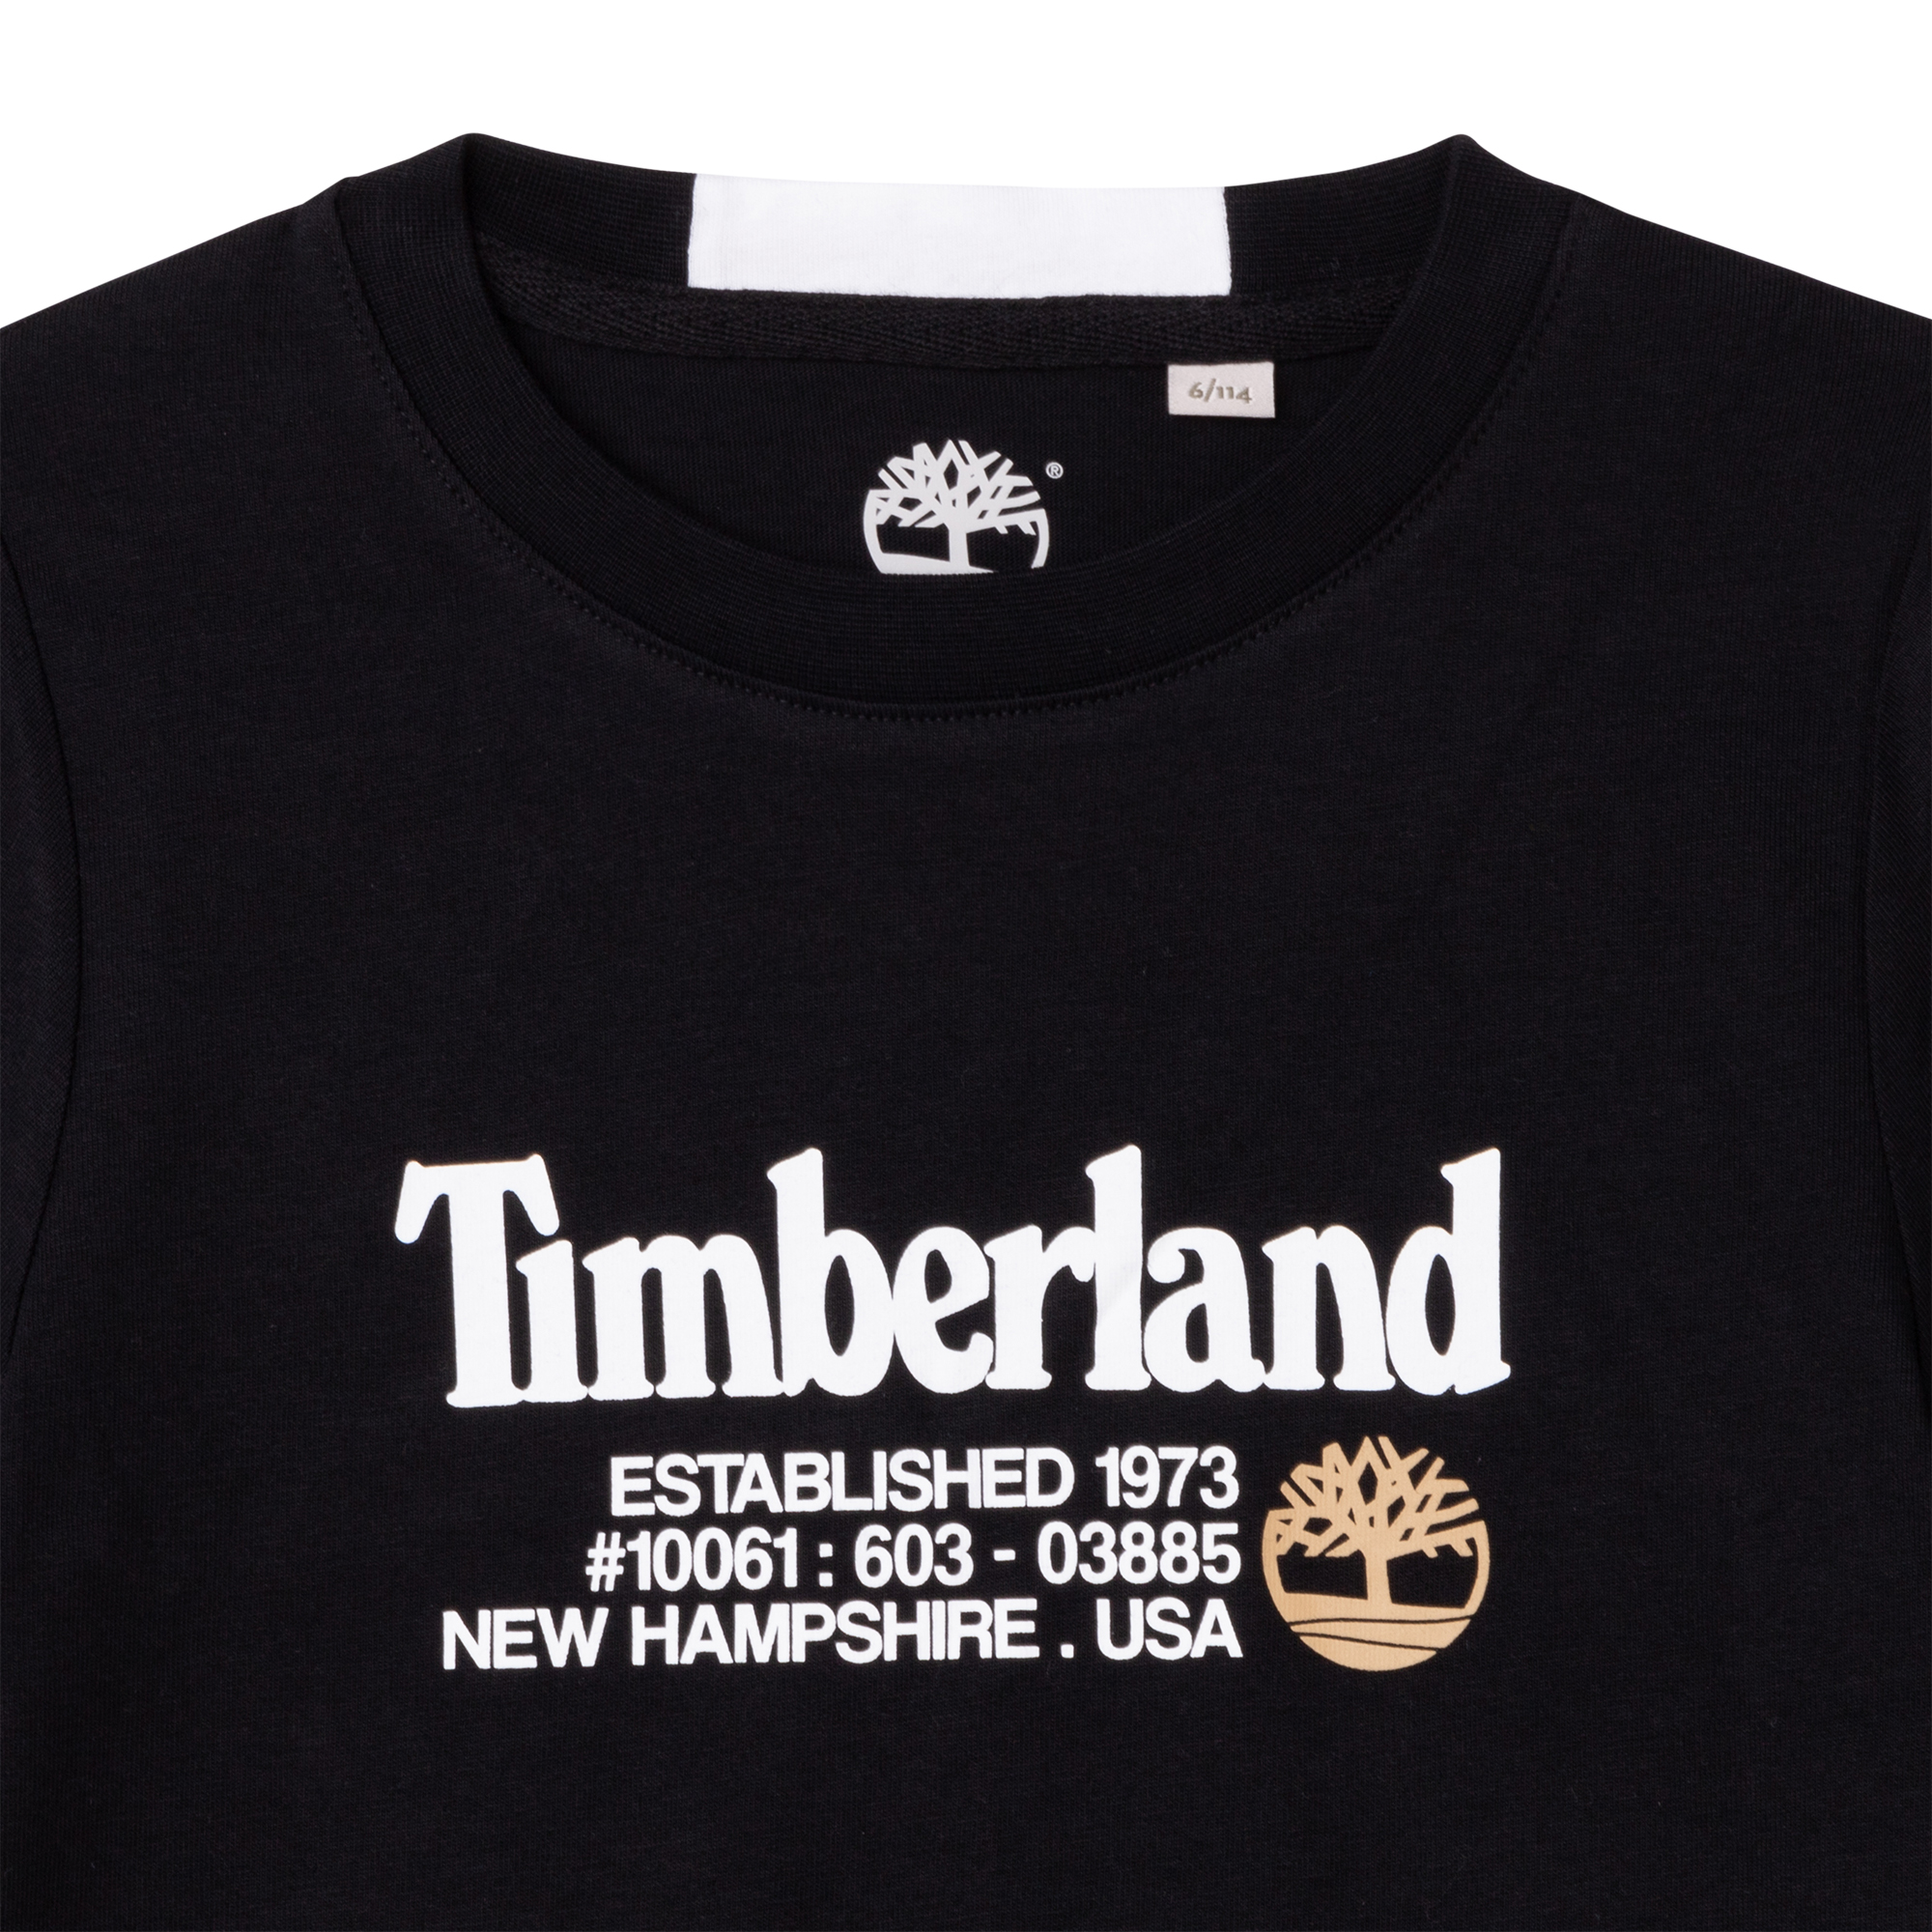 T-shirt van jersey-katoen met opdruk TIMBERLAND Voor